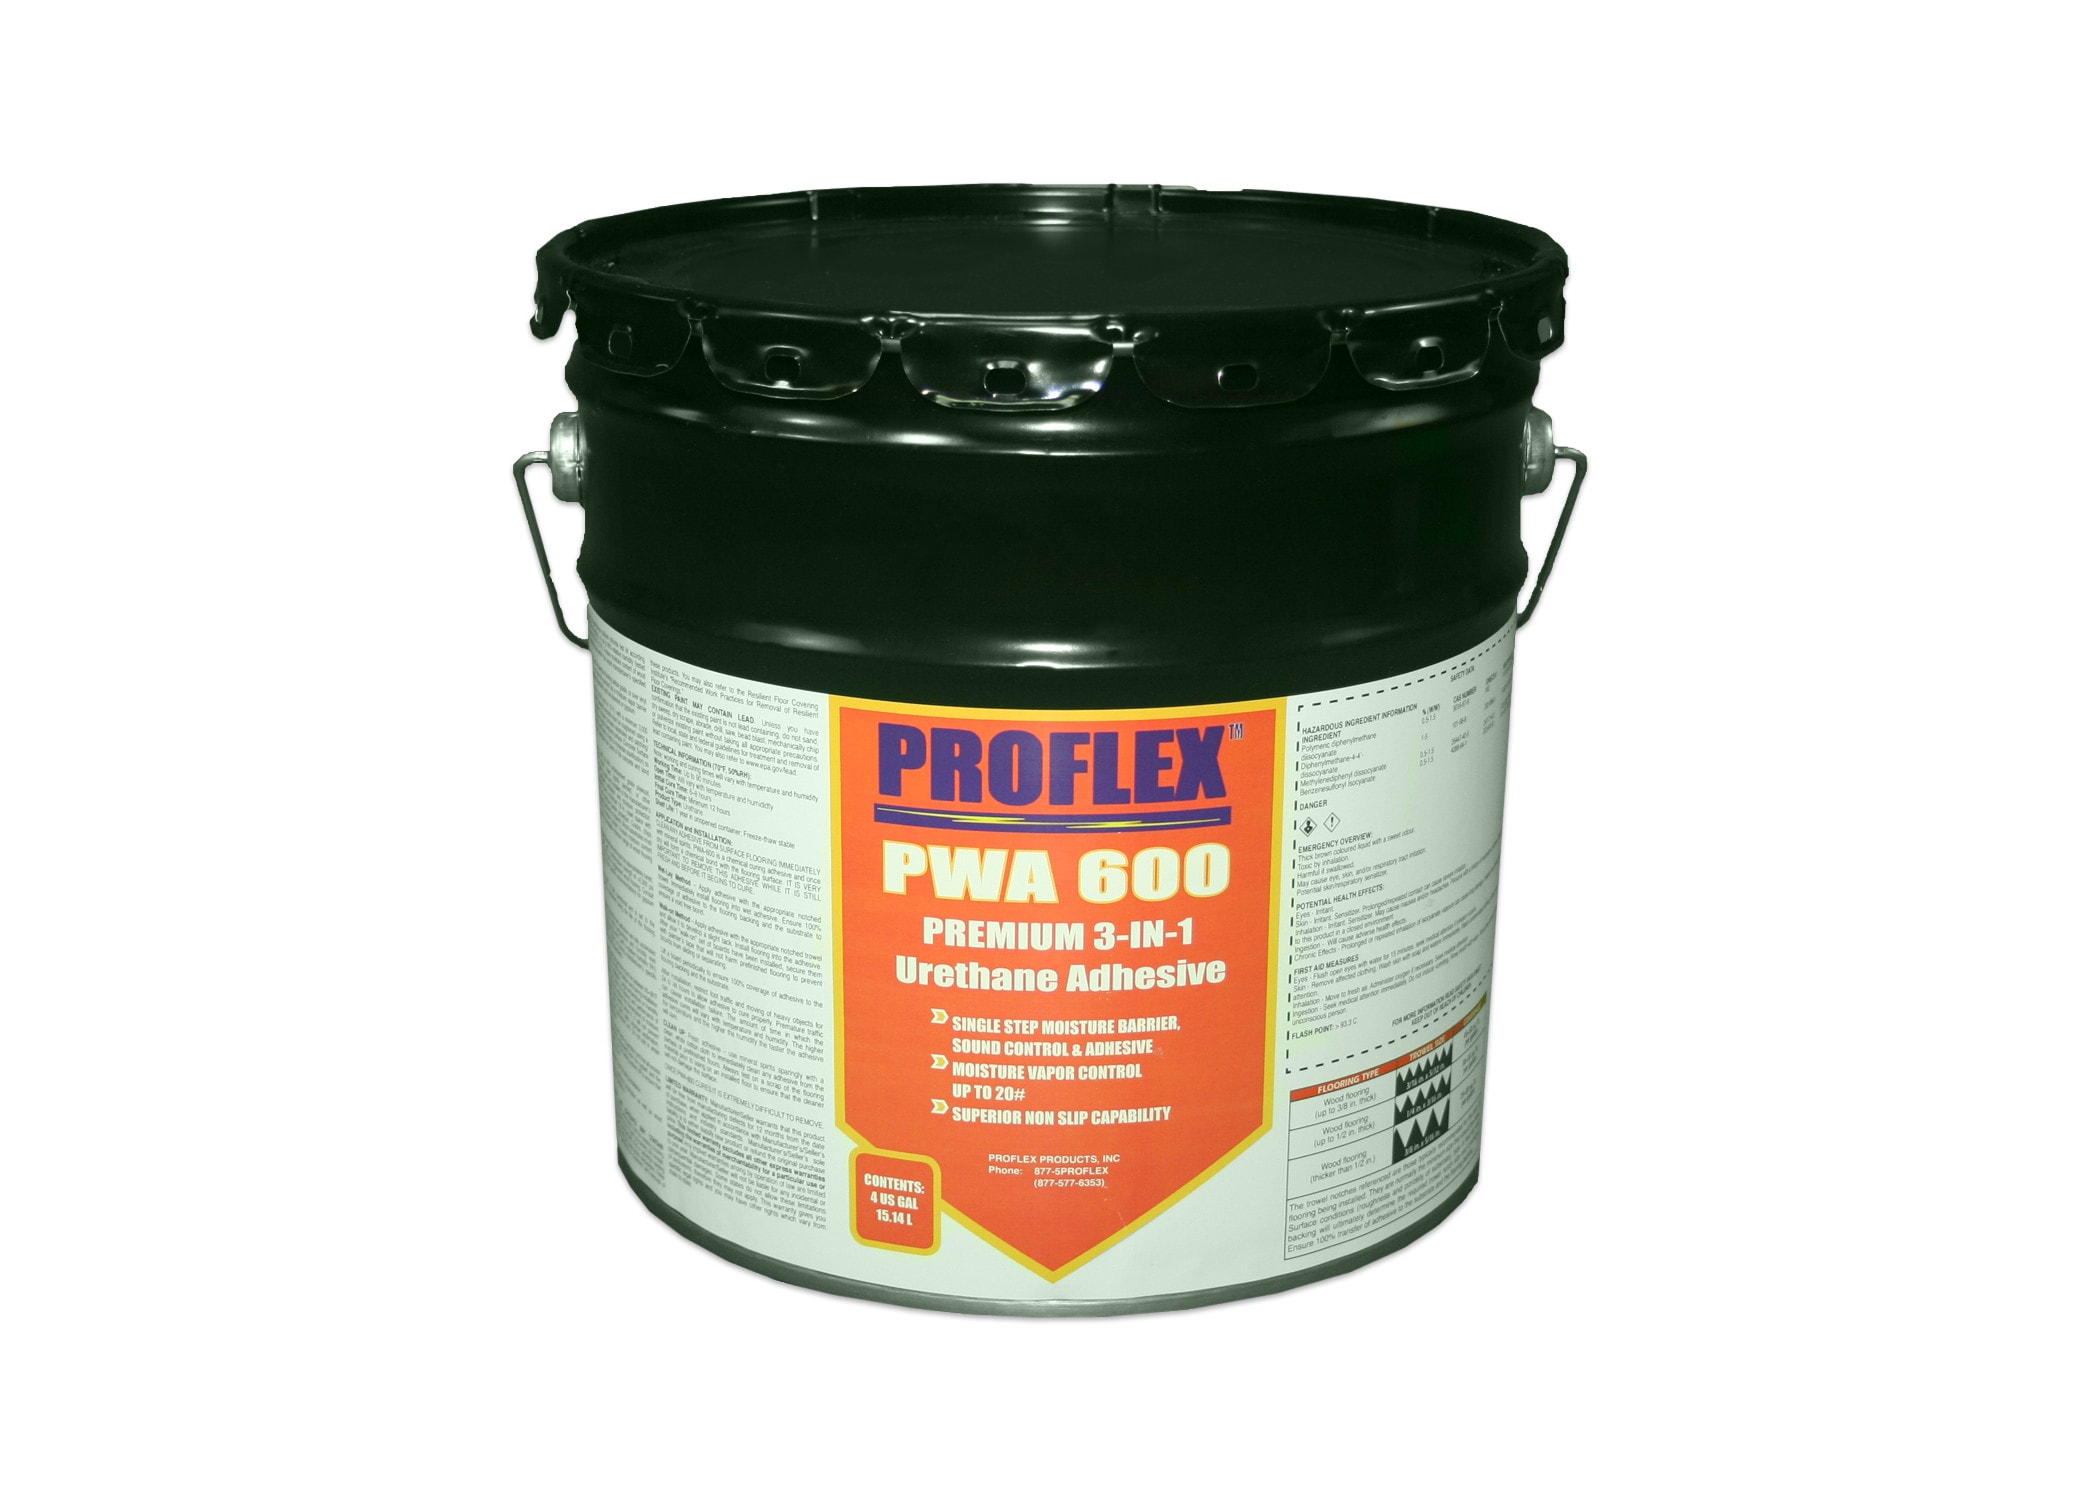 Proflex Wood Flooring Adhesive 4, Urethane Adhesive For Hardwood Floors